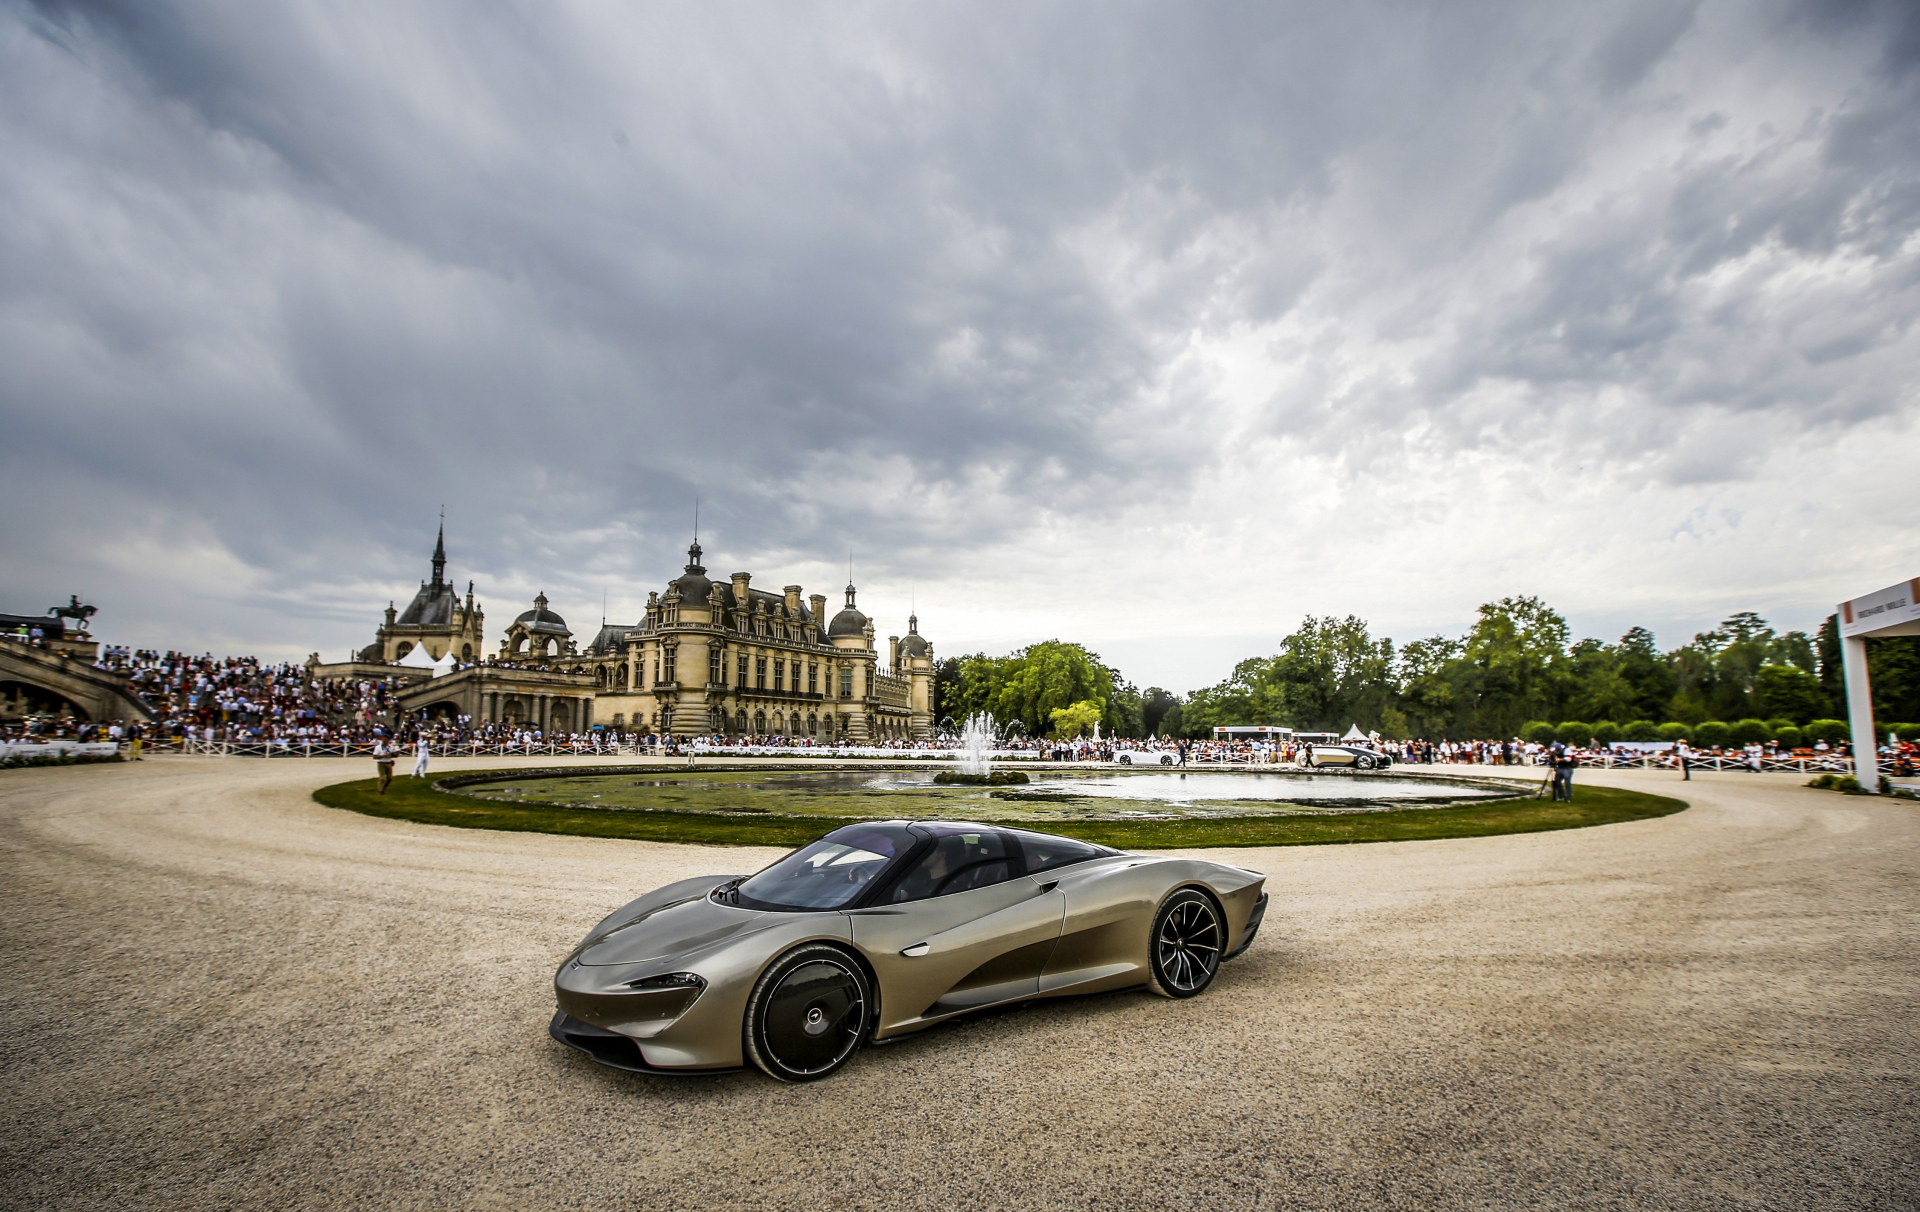 Richard Mille Otomobil Yarışması Chantilly Arts & Elegance 2019’u Dostlarıyla Kutladı